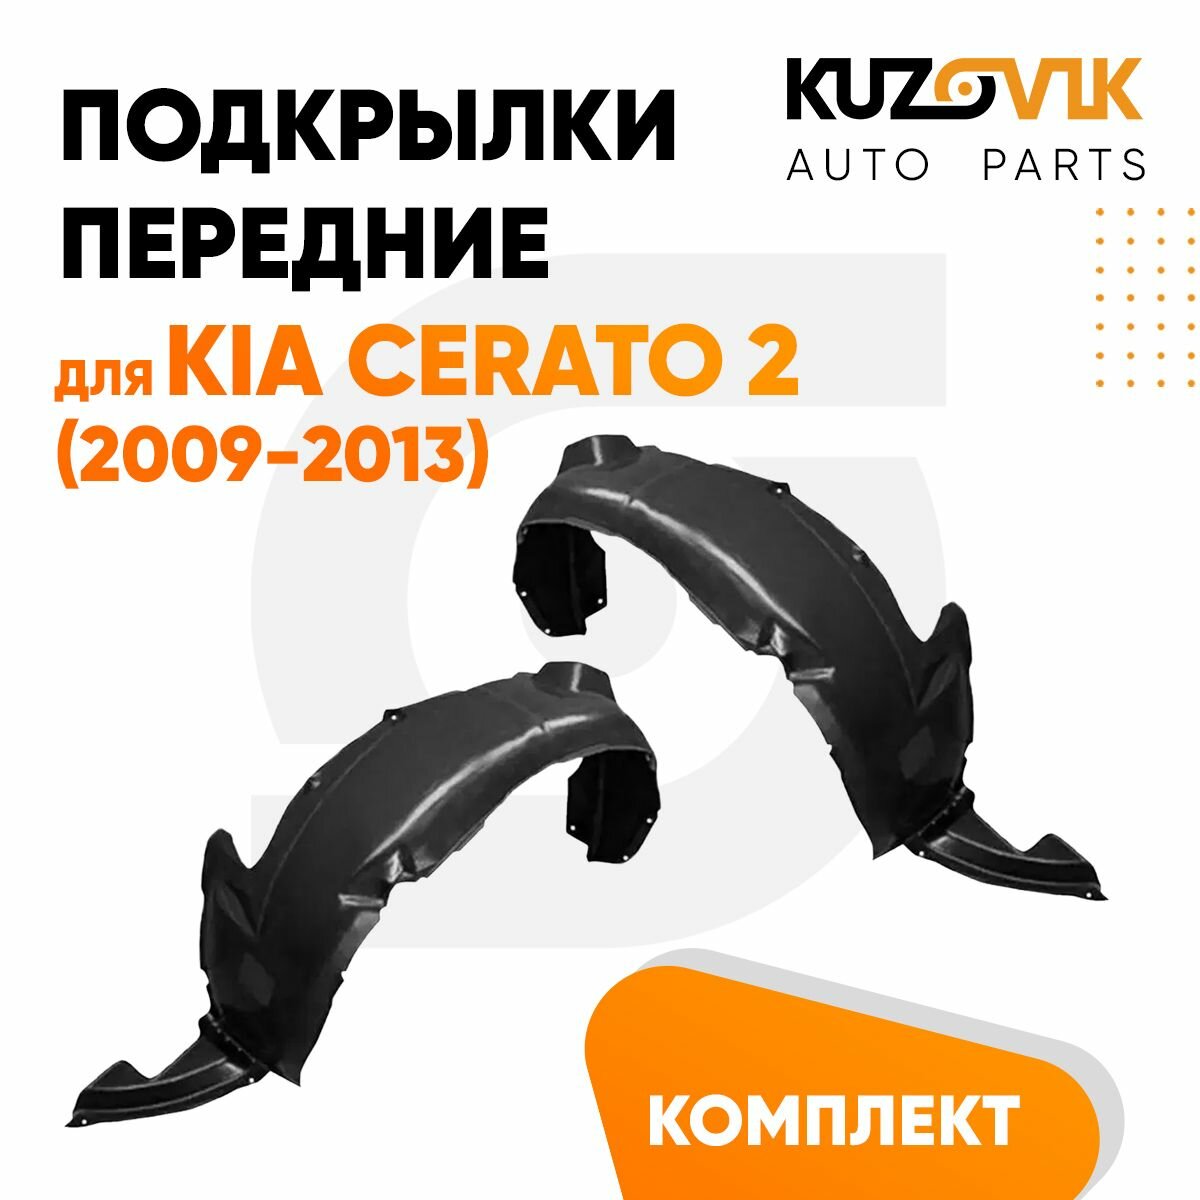 Подкрылок переднего правого крыла Kia Cerato 2 (2009-2012)